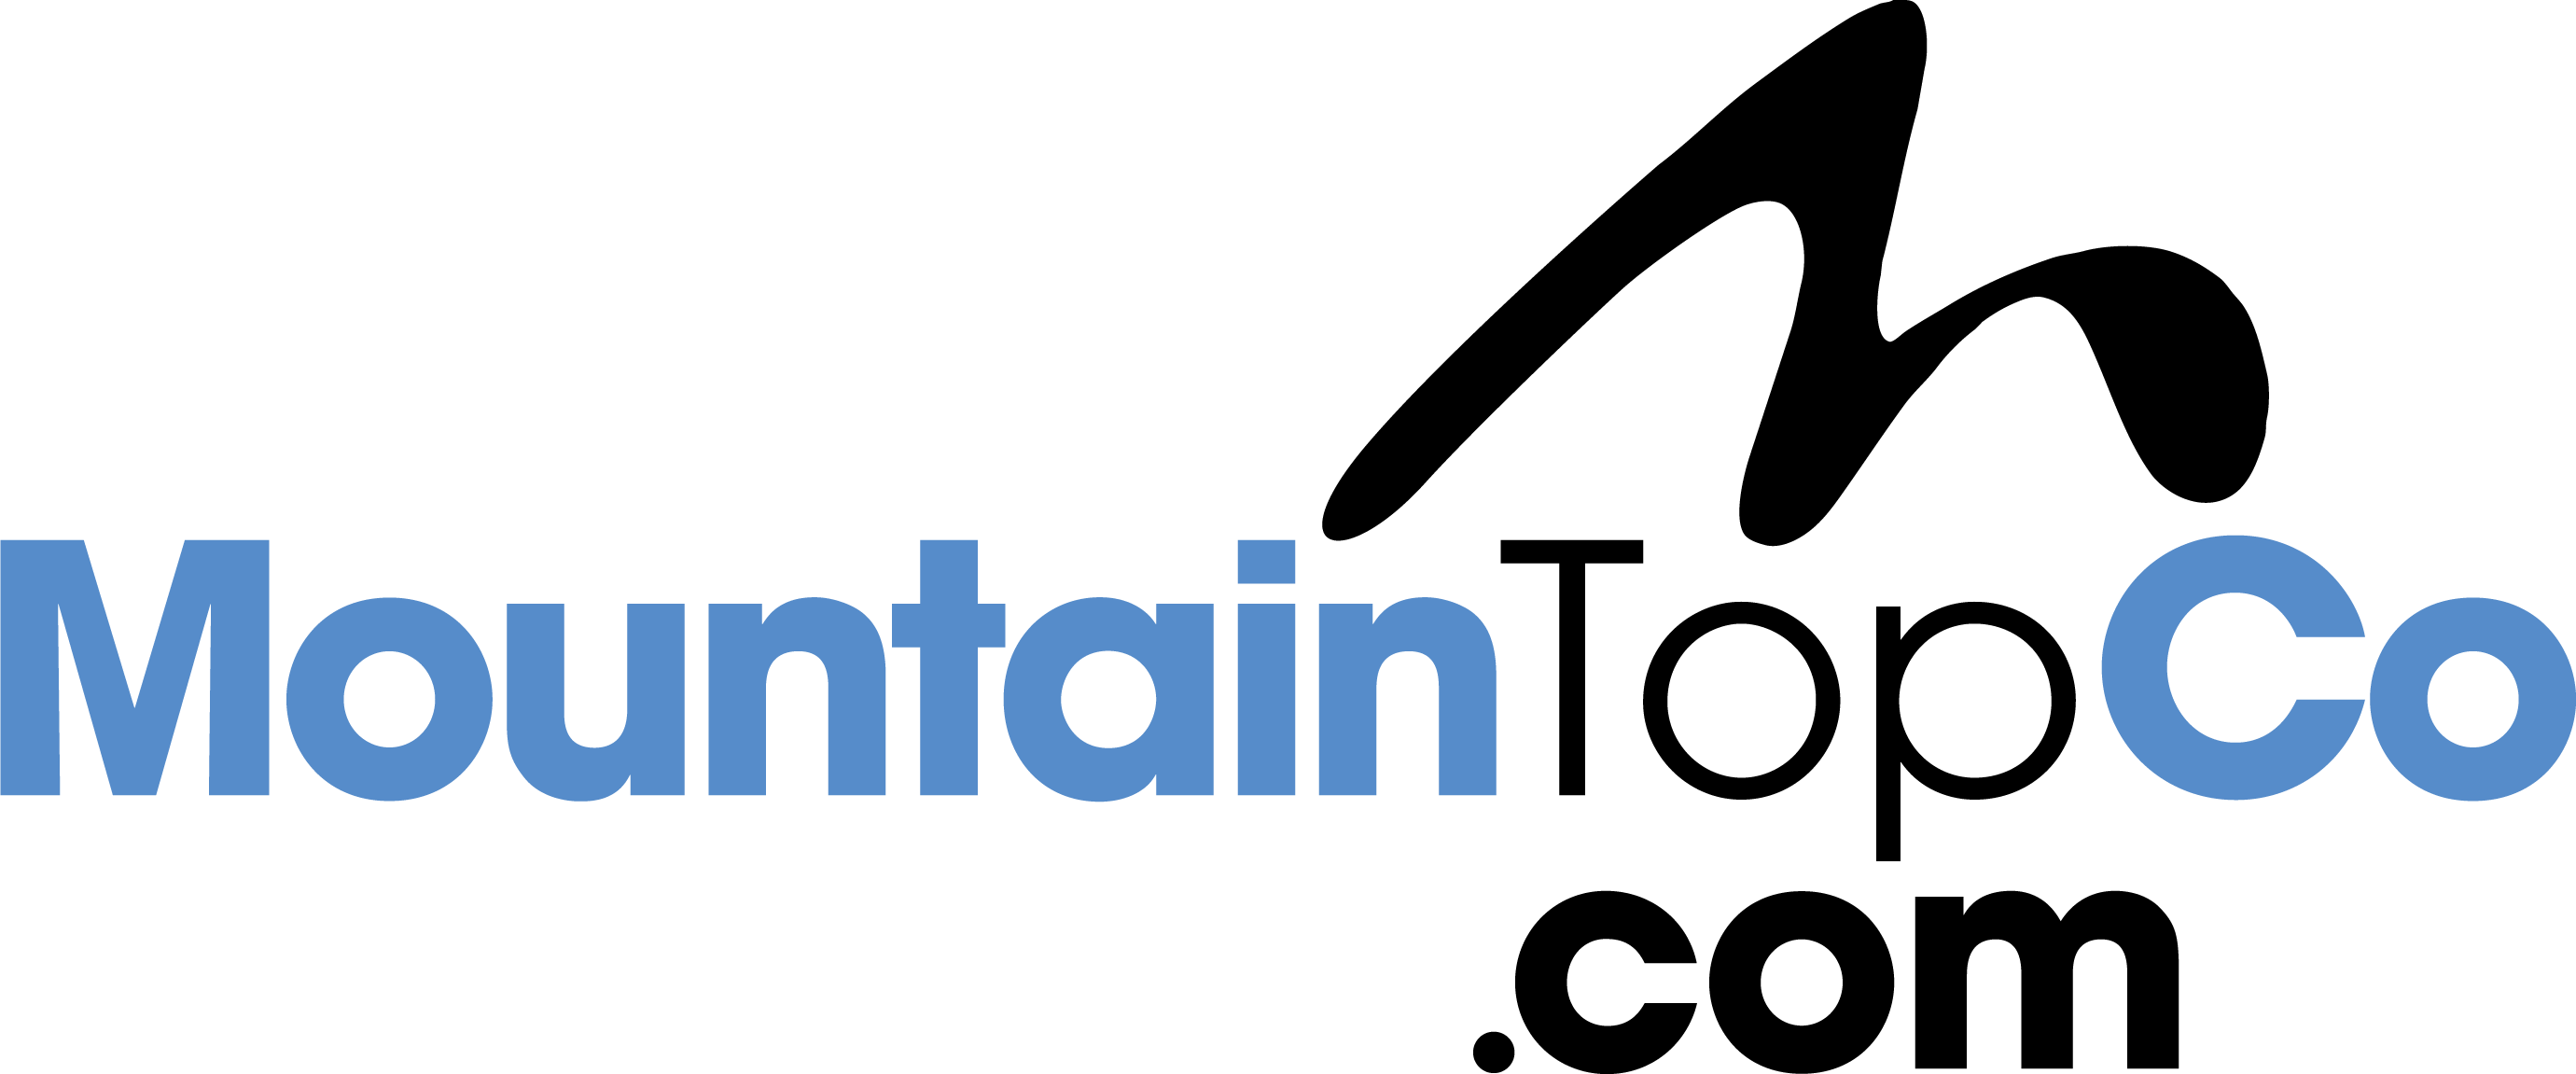 Mountain Top Contracting Co Logo